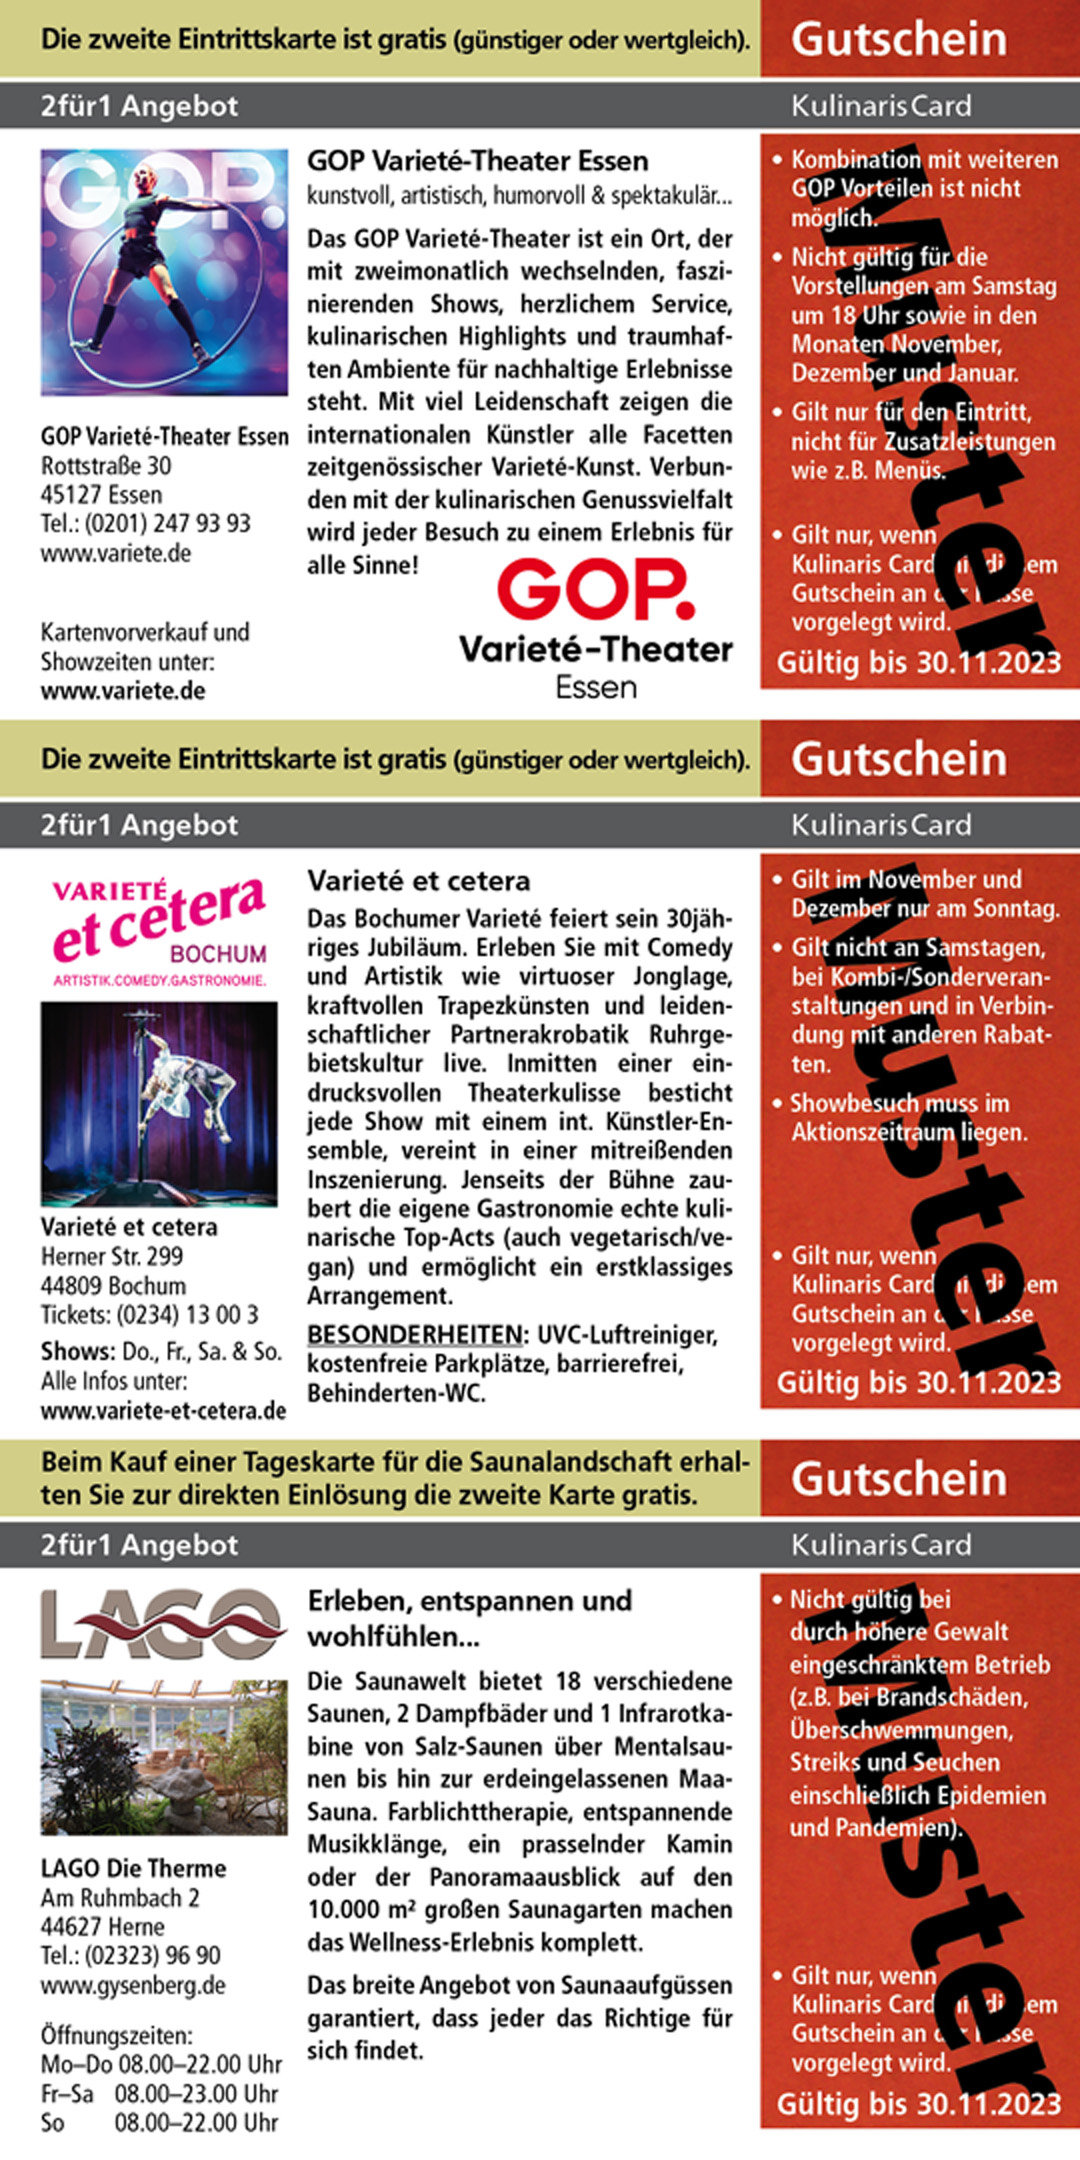 Gutschein_GOP_Varieté-Theater_Varieté_et_cetera_LAGO_Die_Therme_ Gutscheine_im_Ruhrgebiet_ www.gysenberg.de_ www.variete-et-cetera.de_ www.variete.de